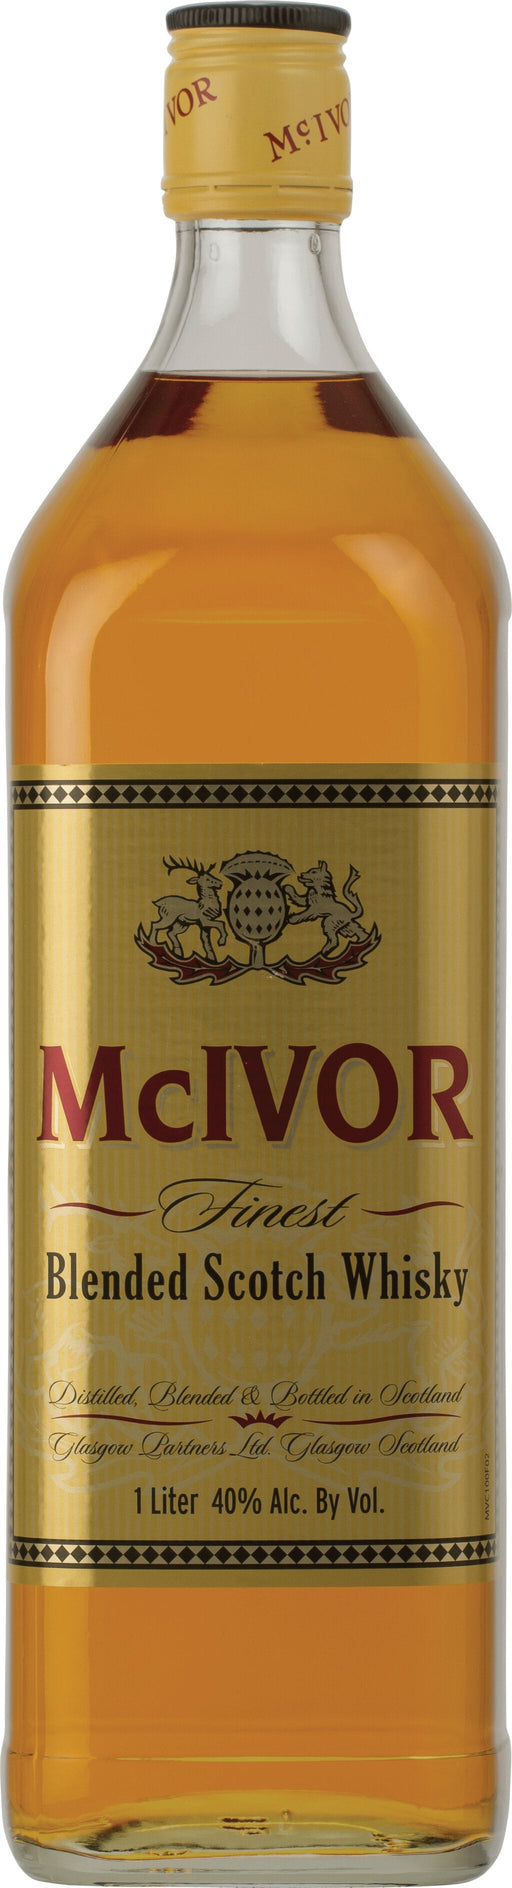 Mcivor Blended Scotch Whisky 1 Liter - All Kosher Wines - kosher